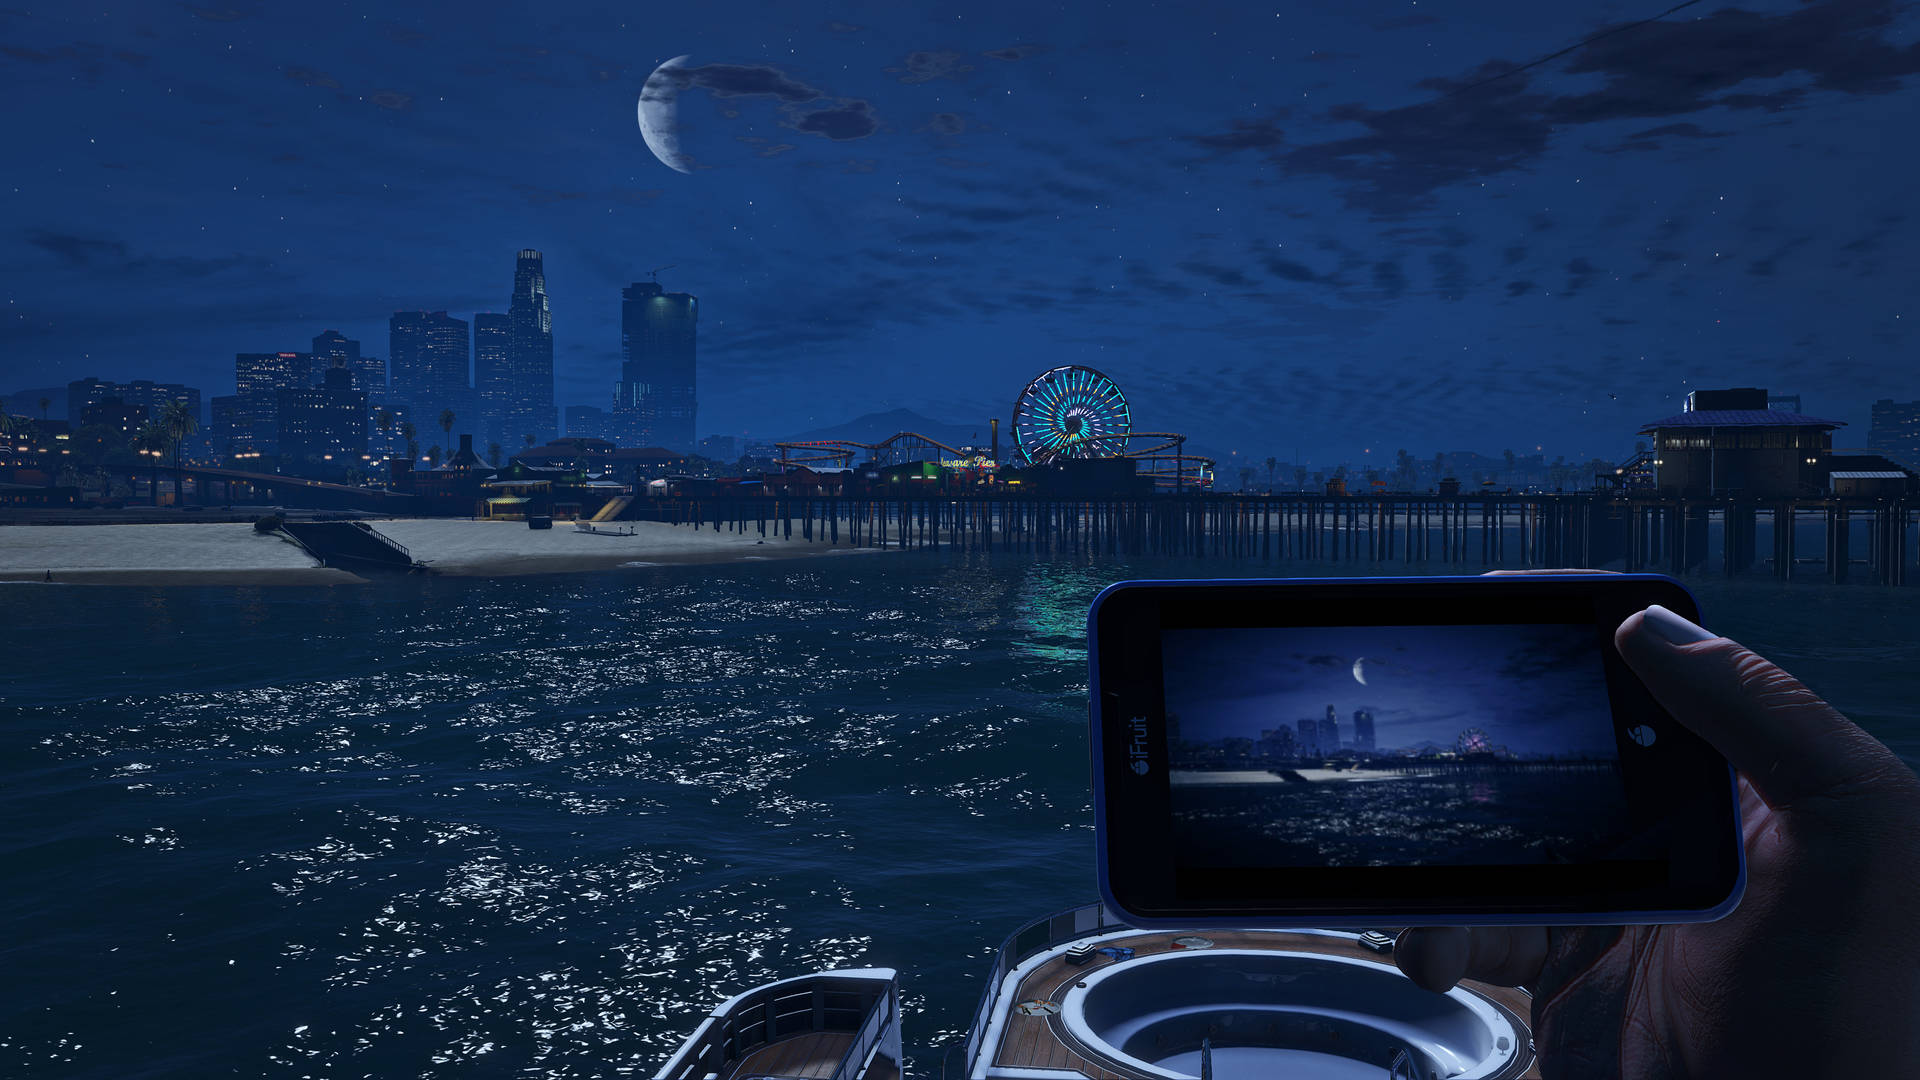 Grand Theft Auto V Del Perro Pier Background